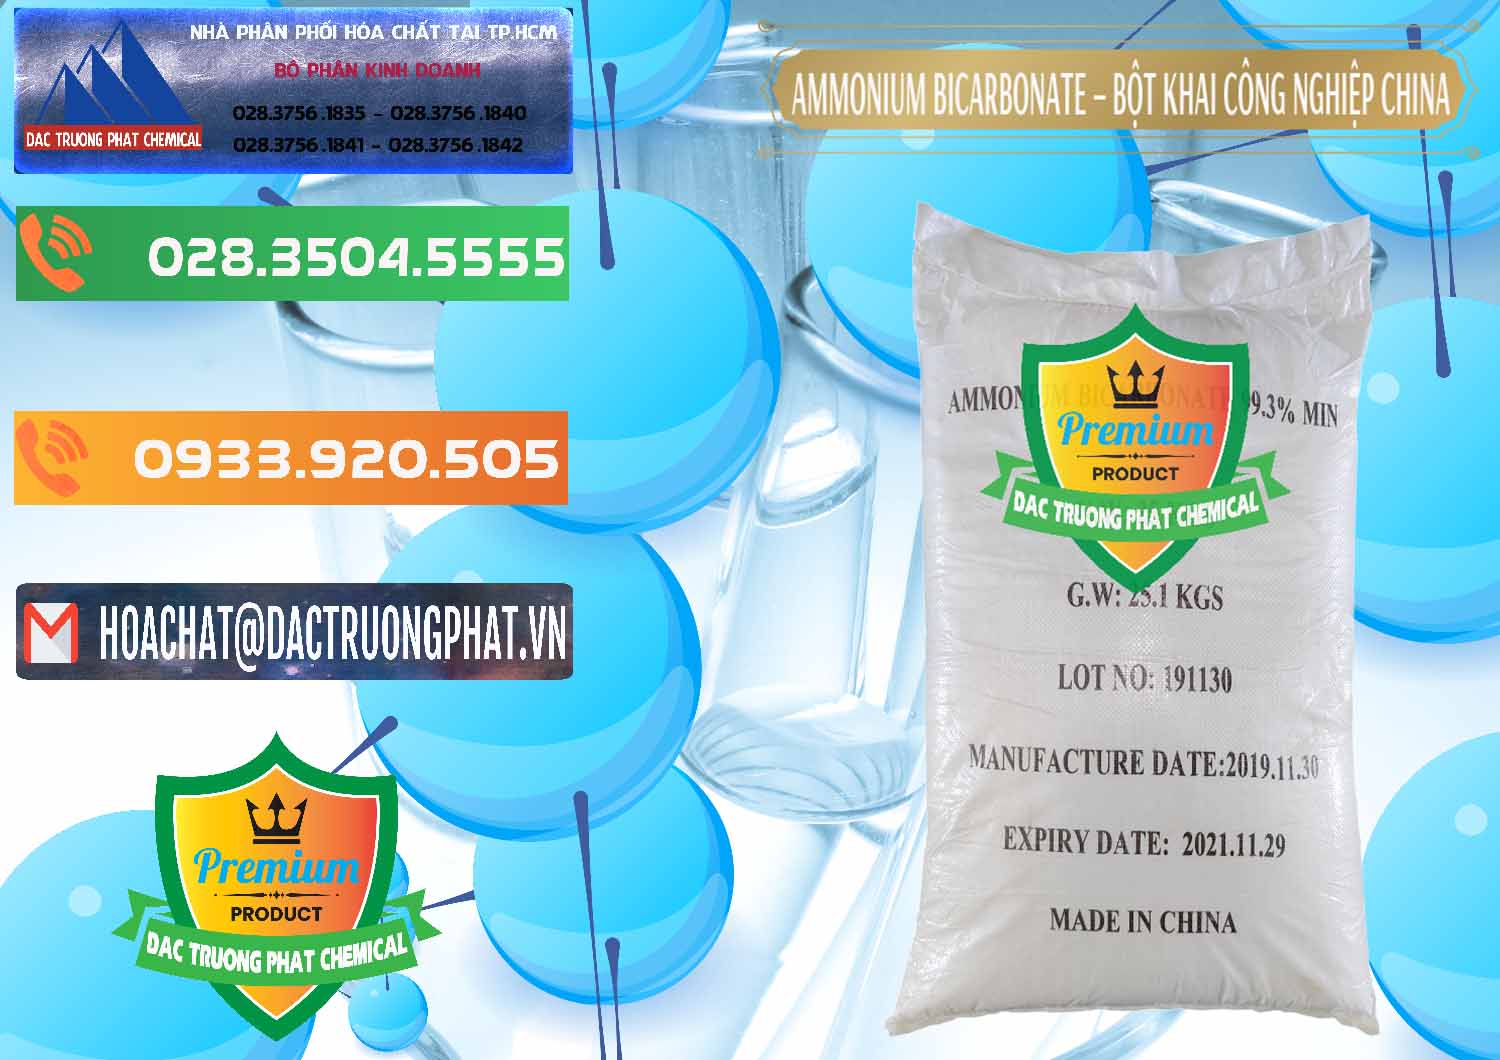 Công ty cung ứng _ bán Ammonium Bicarbonate – Bột Khai Công Nghiệp Trung Quốc China - 0020 - Chuyên kinh doanh _ phân phối hóa chất tại TP.HCM - hoachatxulynuoc.com.vn